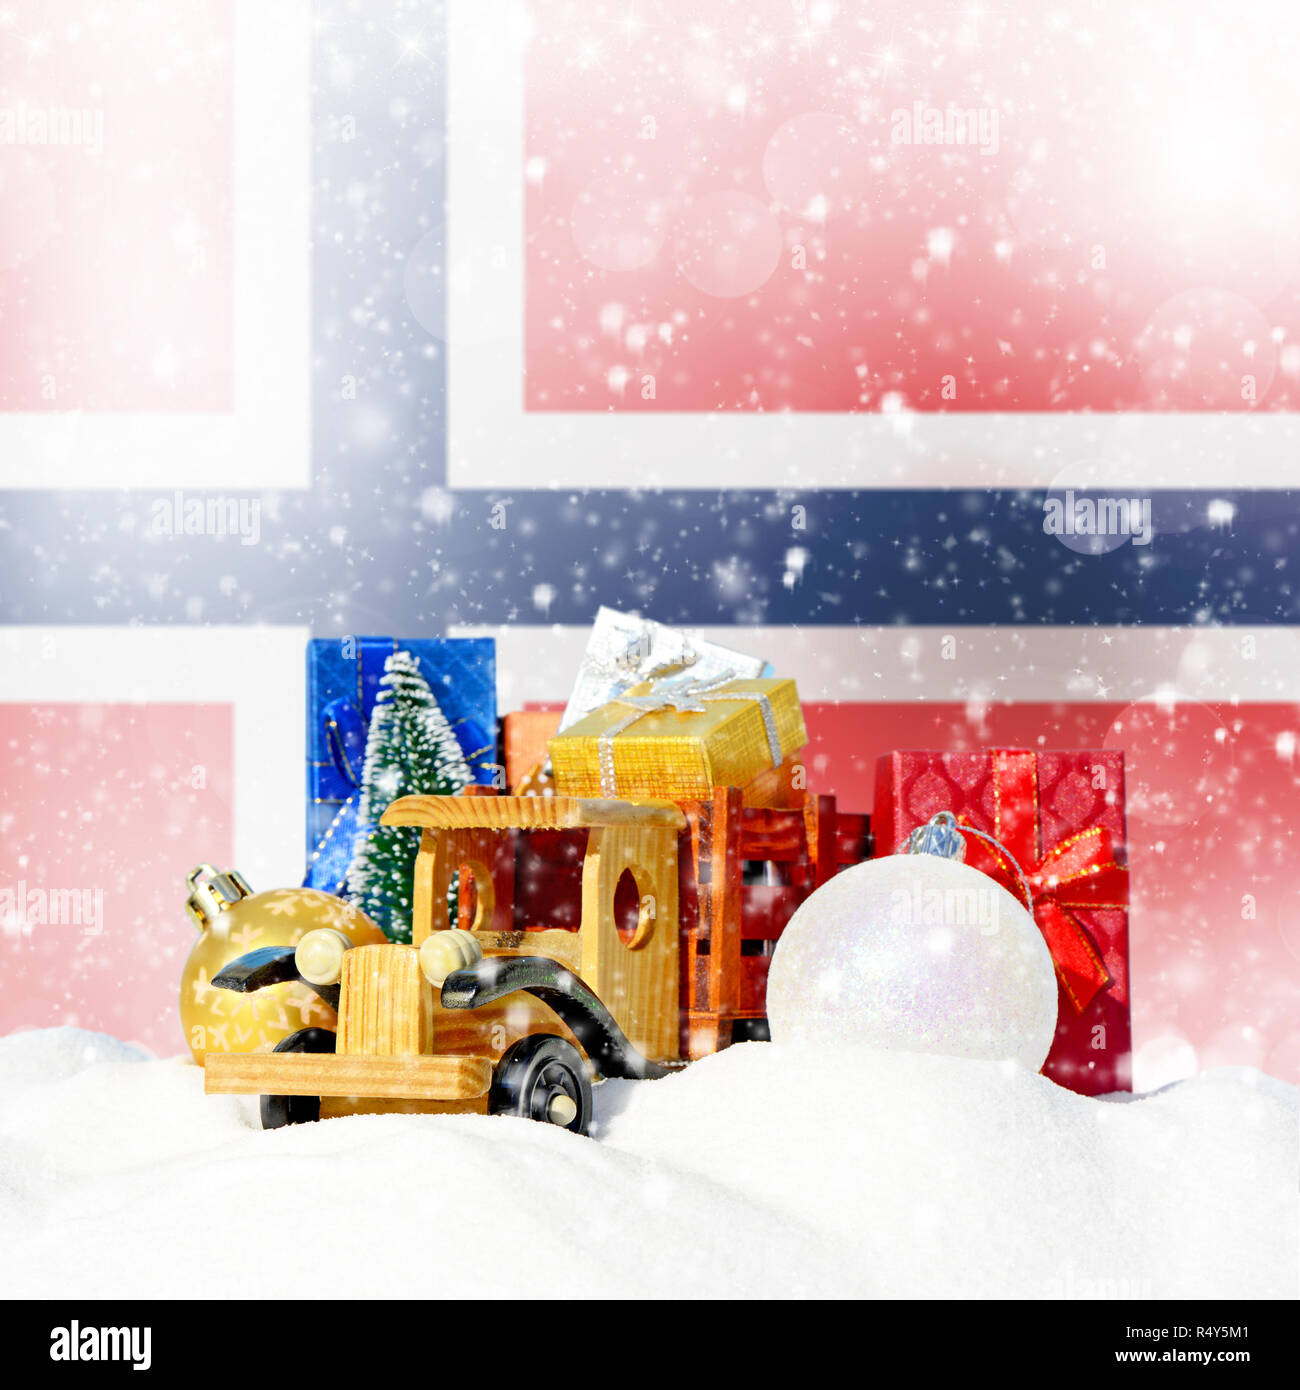 Weihnachten Hintergrund. Spielzeug-LKW mit Geschenken, Neues Jahr Tanne, Kugeln im Schneetreiben und norwegische Flagge Stockfoto